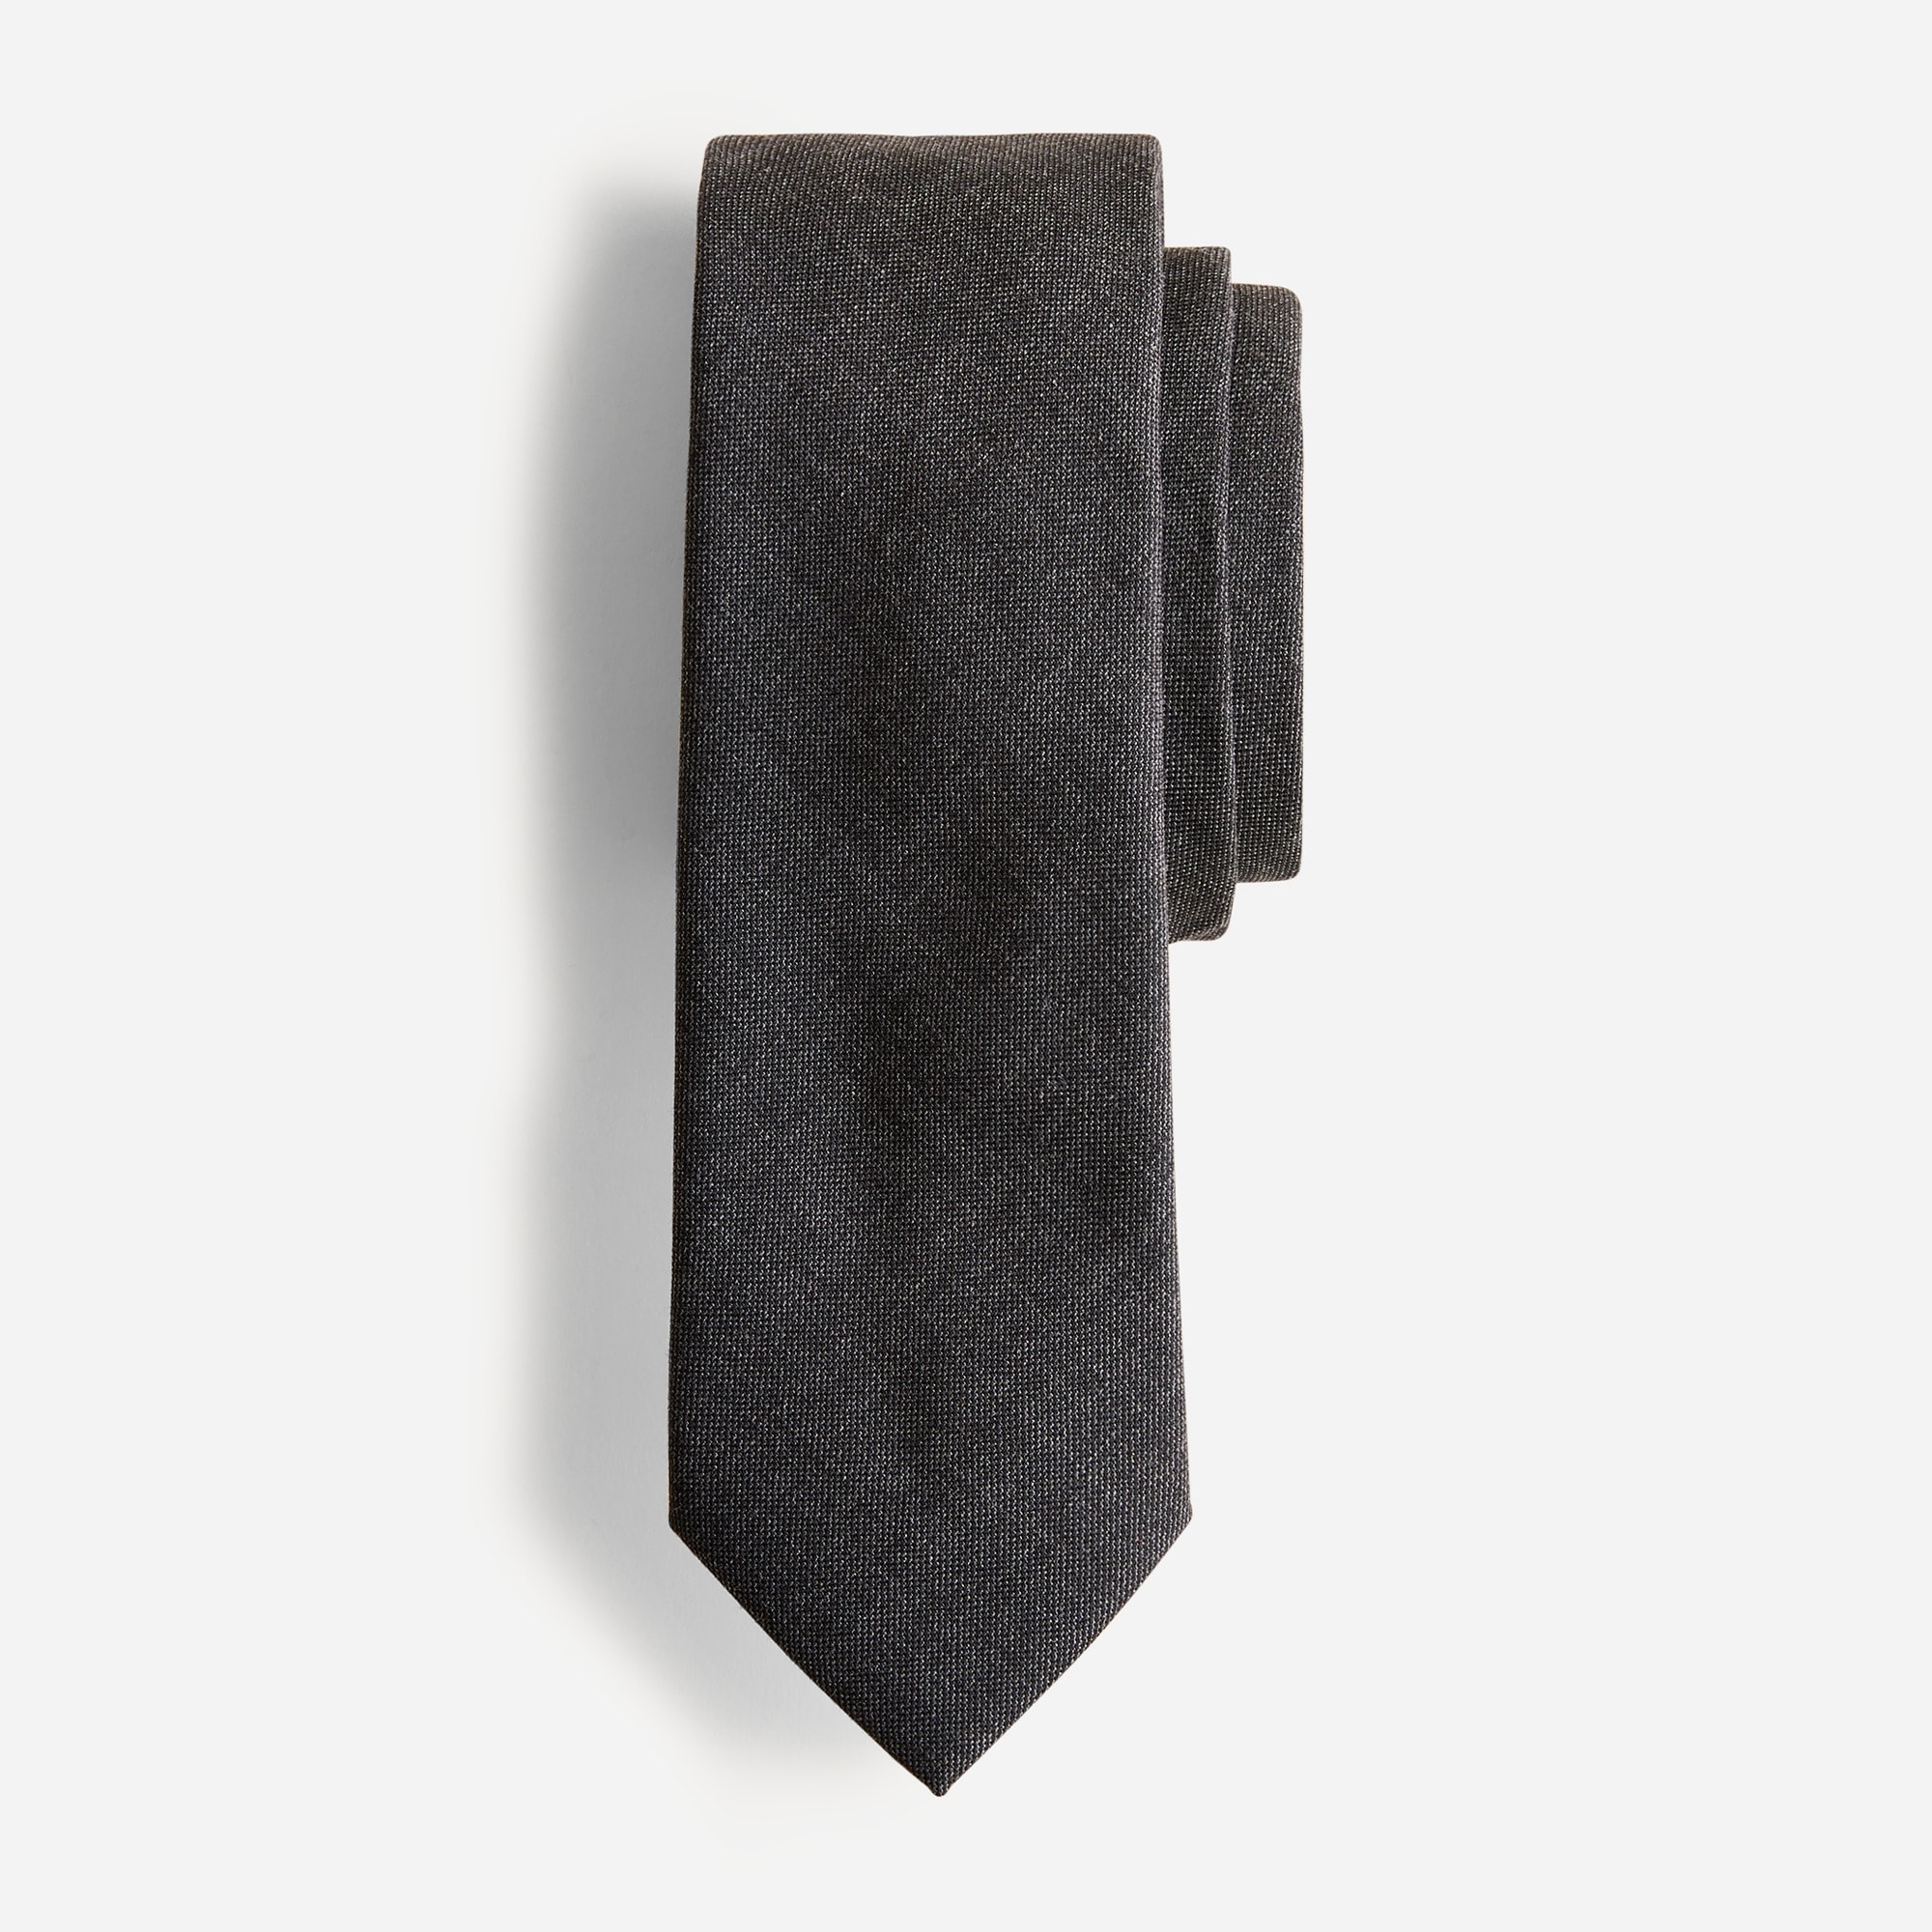  American wool tie in black